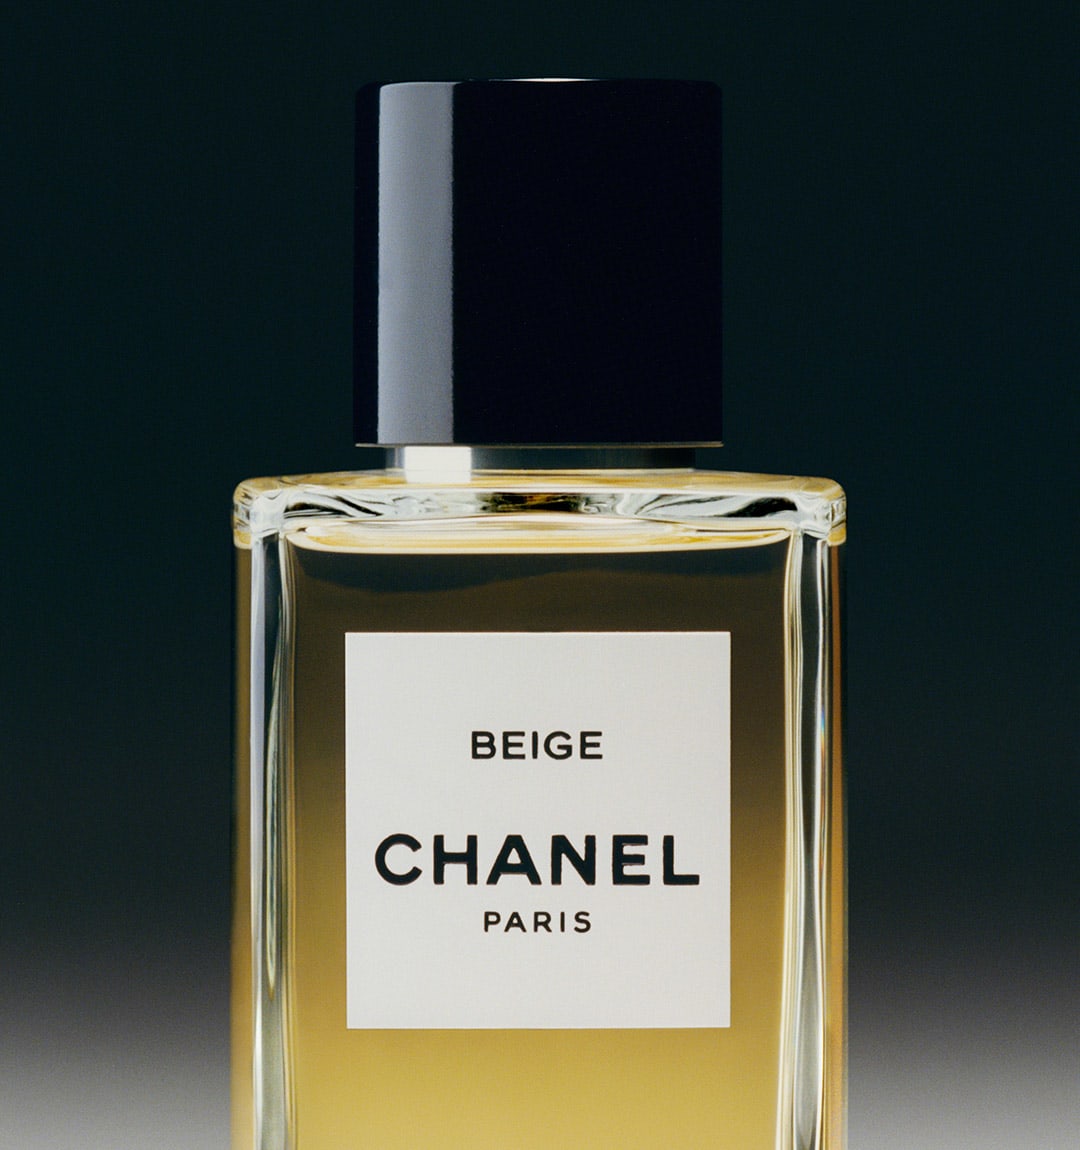 Nước Hoa CHANEL Beige Les Exclusifs De Chanel – Eau de Parfum